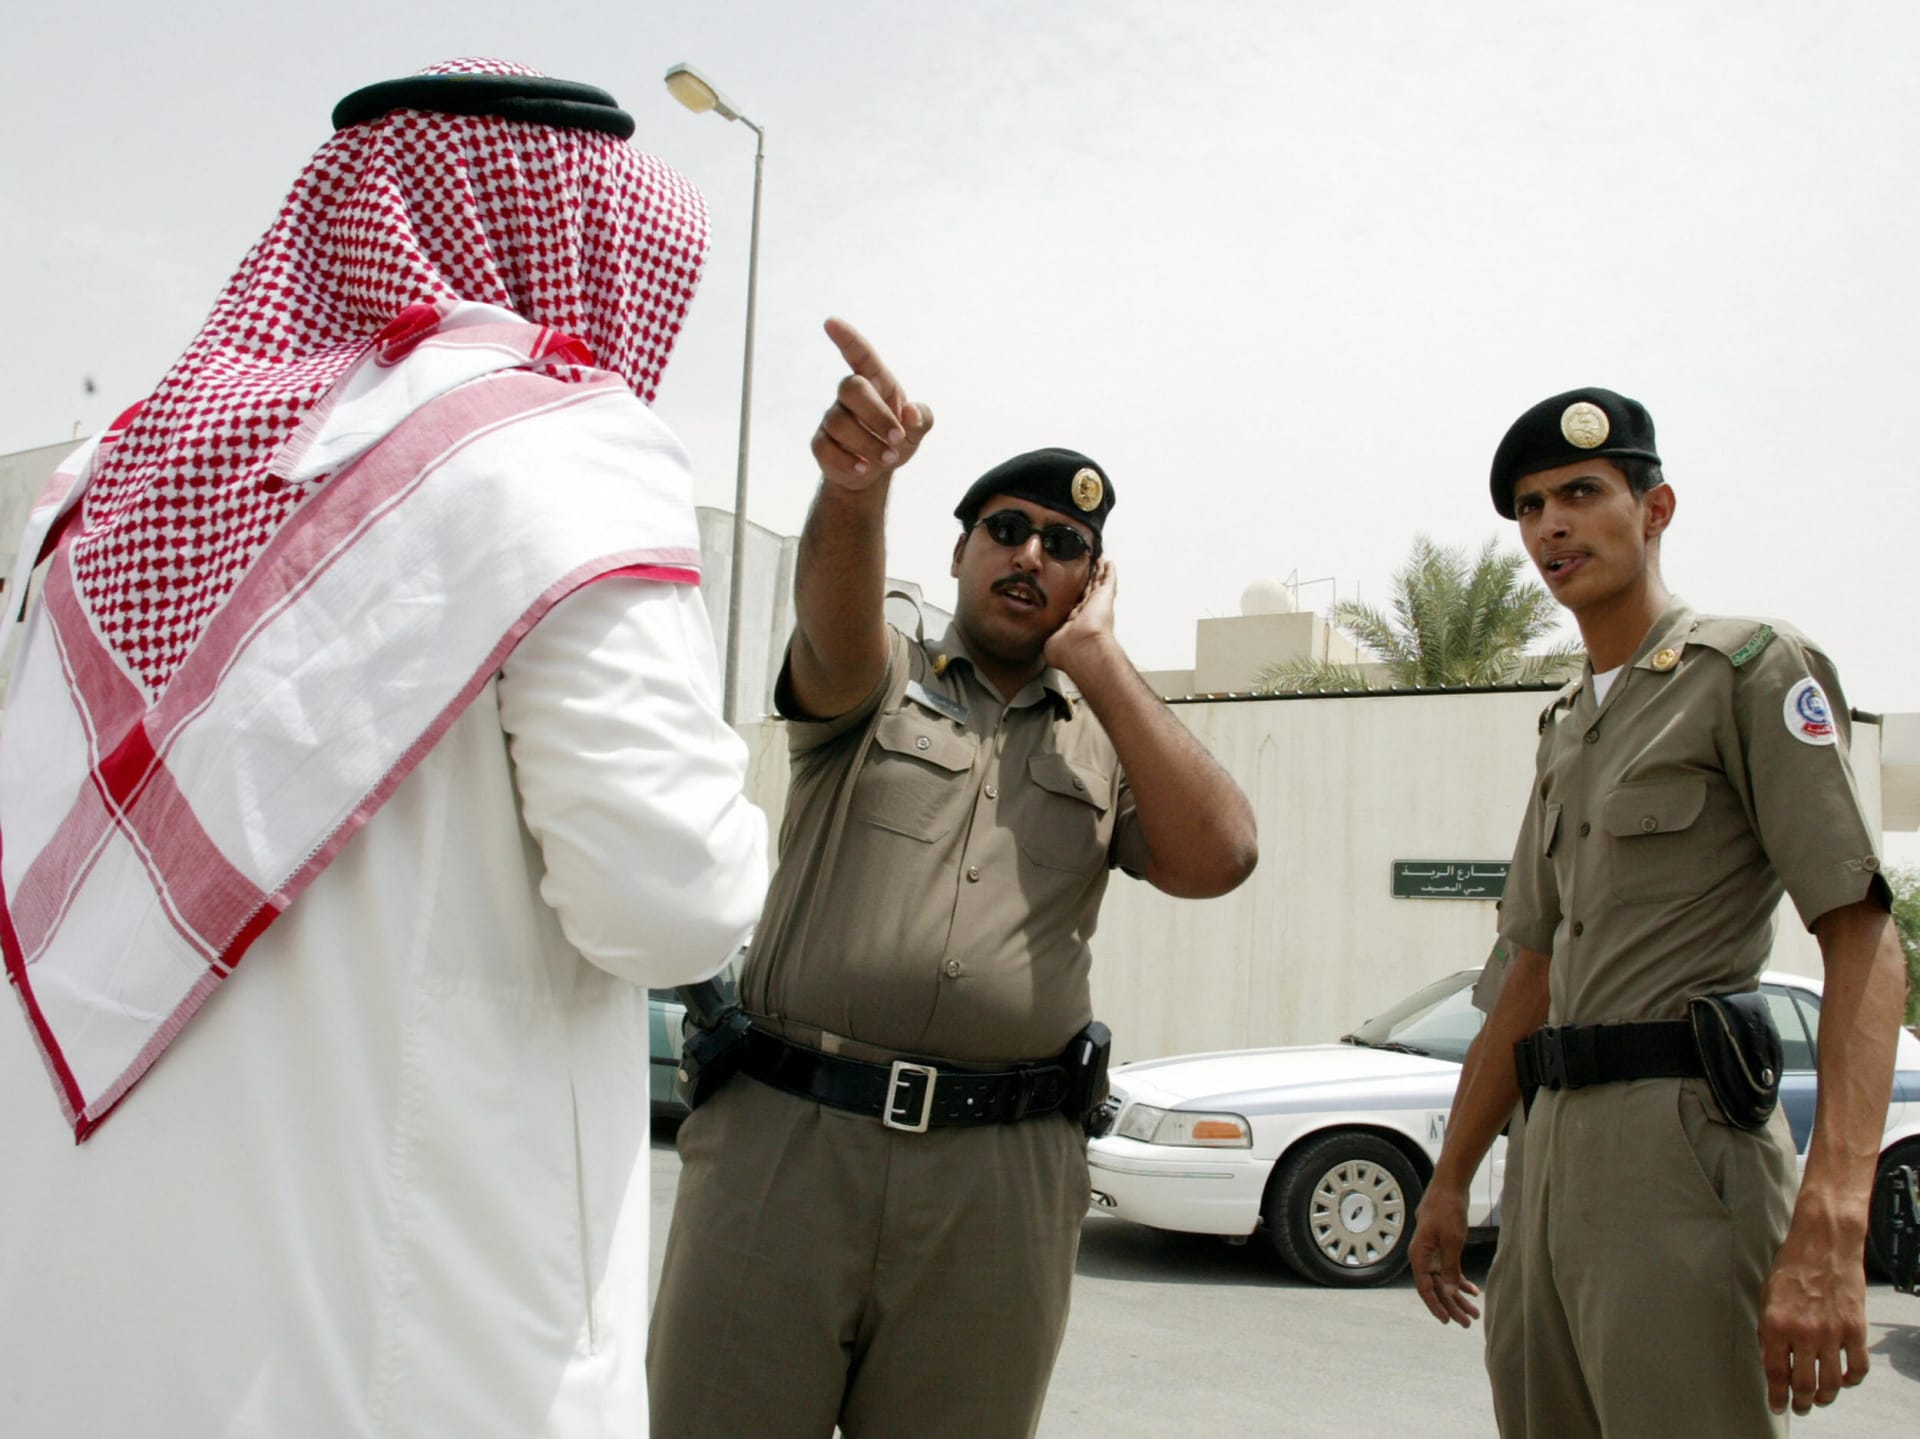 السعودية تنفذ الإعدام بحق عبدالله القحطاني "قصاصا" بعد قتله شخصا بطعنة في الصدر